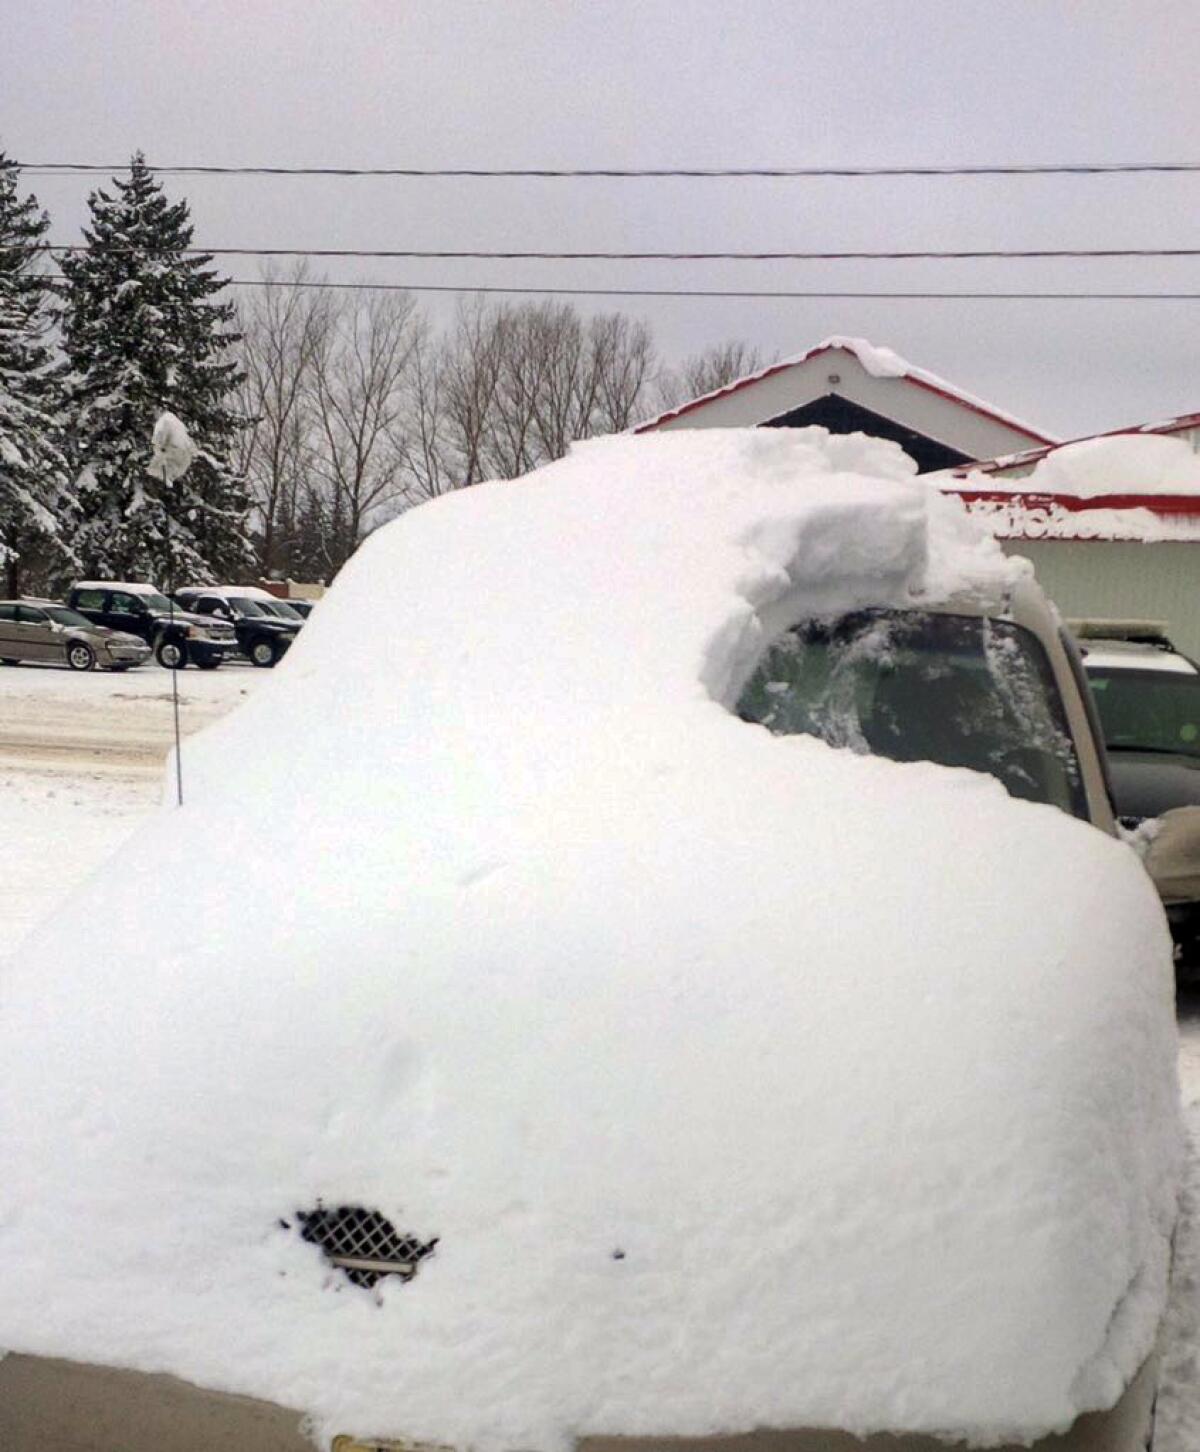 Fotografía proporiconada por la Policía Provincial de Ontario muestra un automóvil cubierno de nieve en Brussels, Canadá. Un anciano de 80 años fue acusado de manejar el auto que estaba cubierto de nieve casi por completo con sólo visible el parabrisas del lado del conductor. (Foto del sargento Russell Nesbitt/ Policía Provincial de Ontario vía AP)